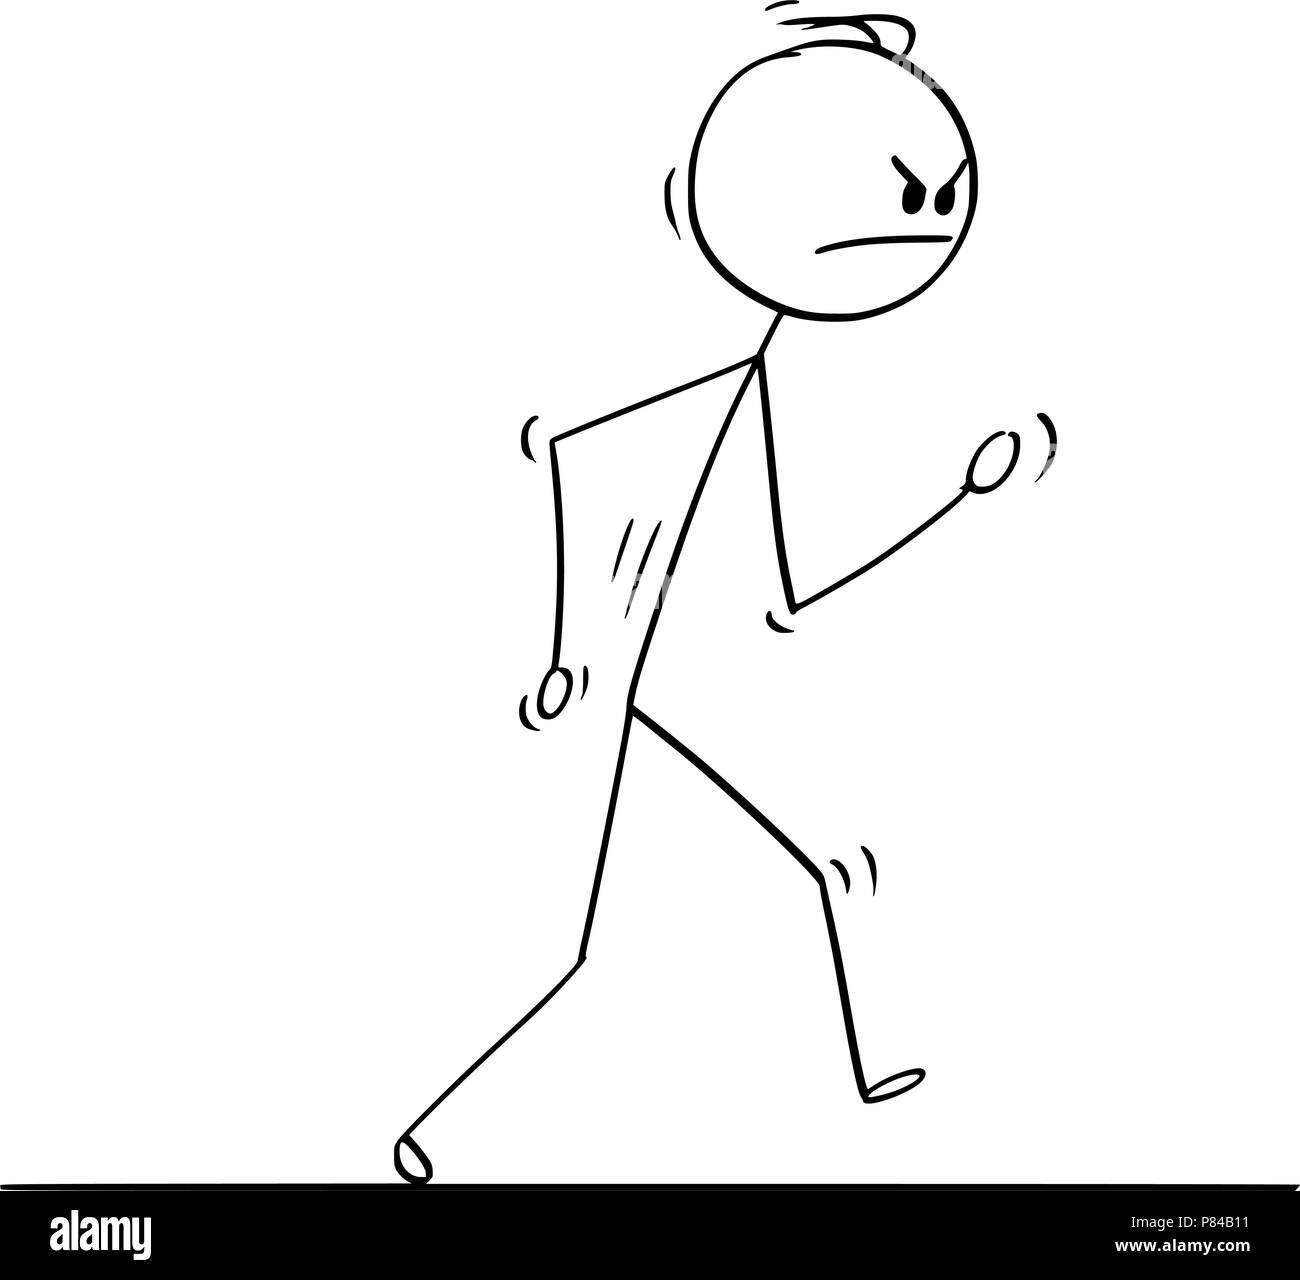 Cartoon of Angry Man Walking Vigorously Stock Vector